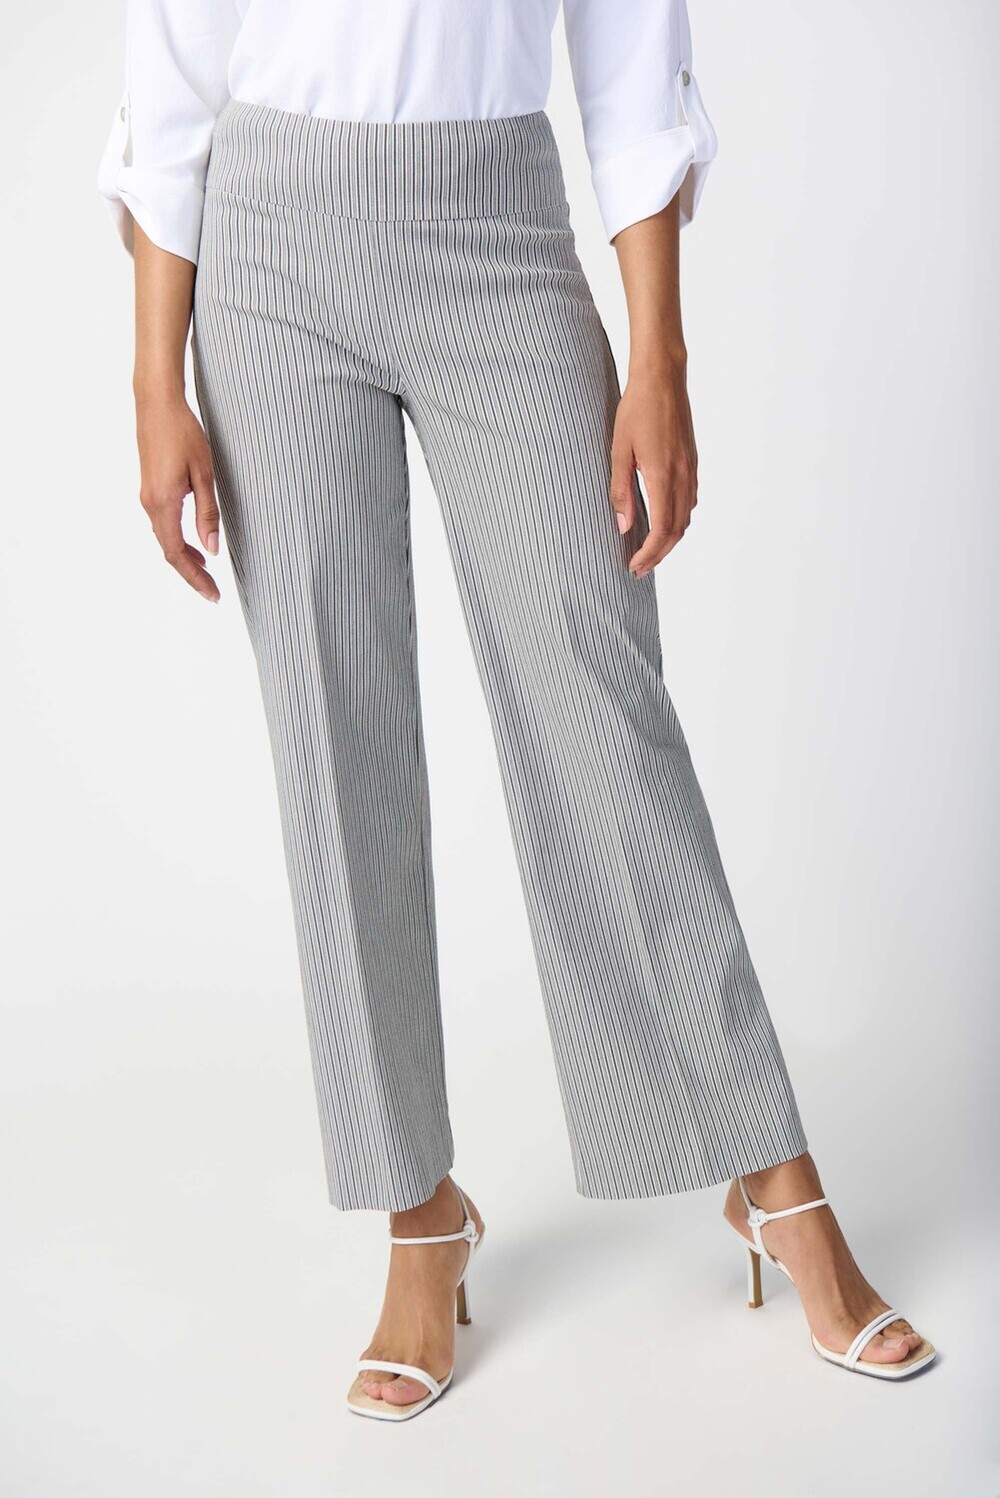 Pantalon large, rayures verticales modèle 241197. Blanc/noir